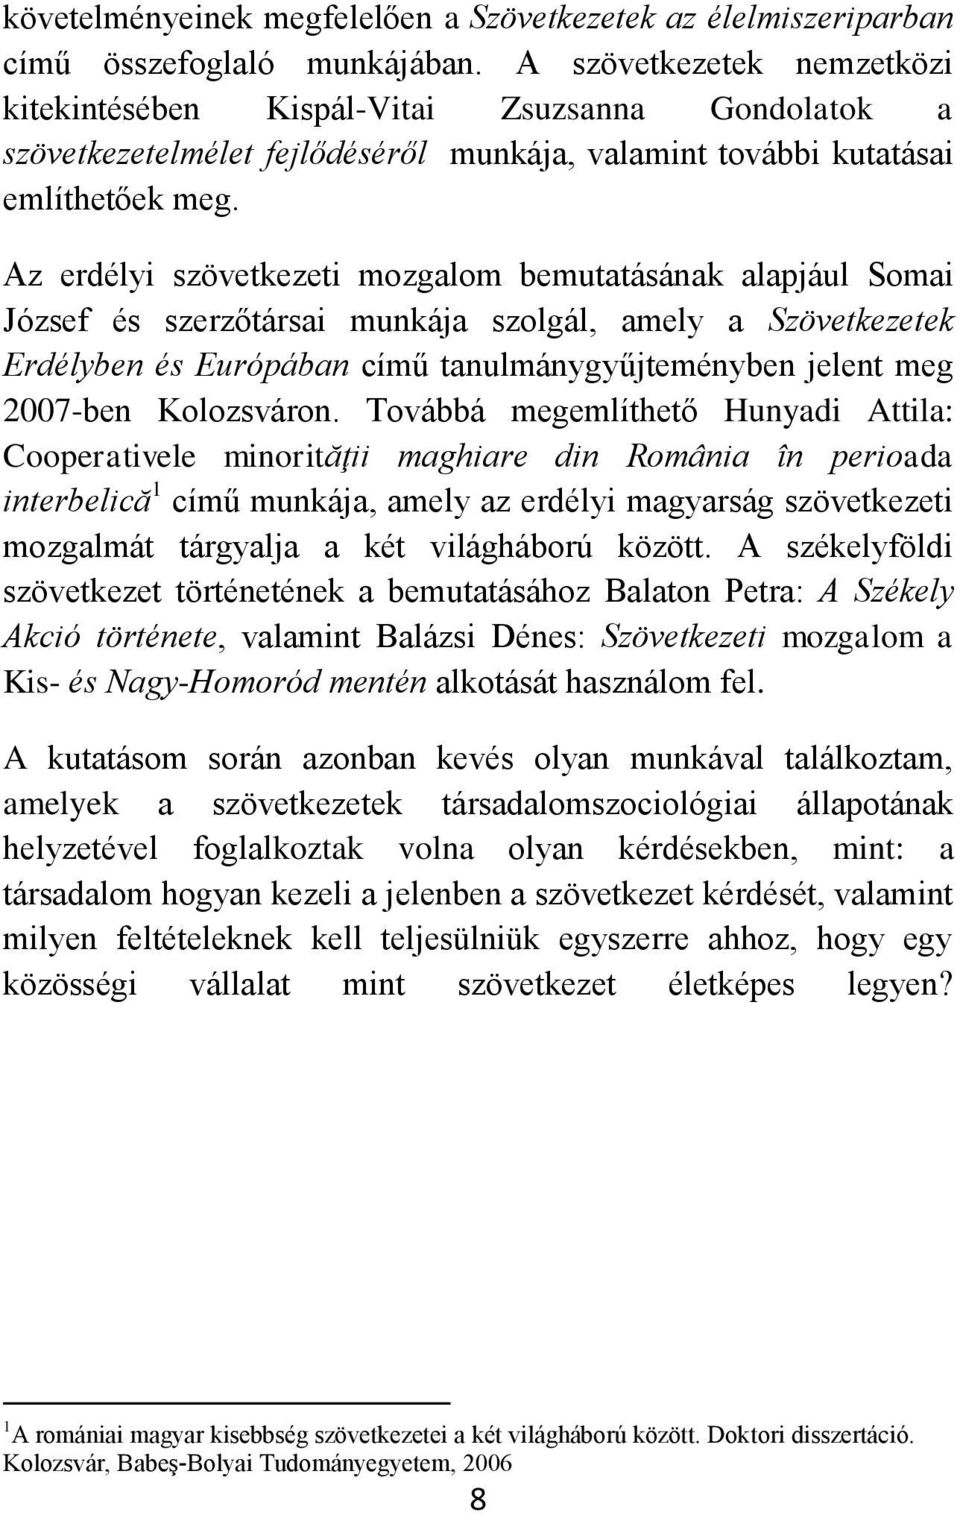 Az erdélyi szövetkezeti mozgalom bemutatásának alapjául Somai József és szerzőtársai munkája szolgál, amely a Szövetkezetek Erdélyben és Európában című tanulmánygyűjteményben jelent meg 2007-ben